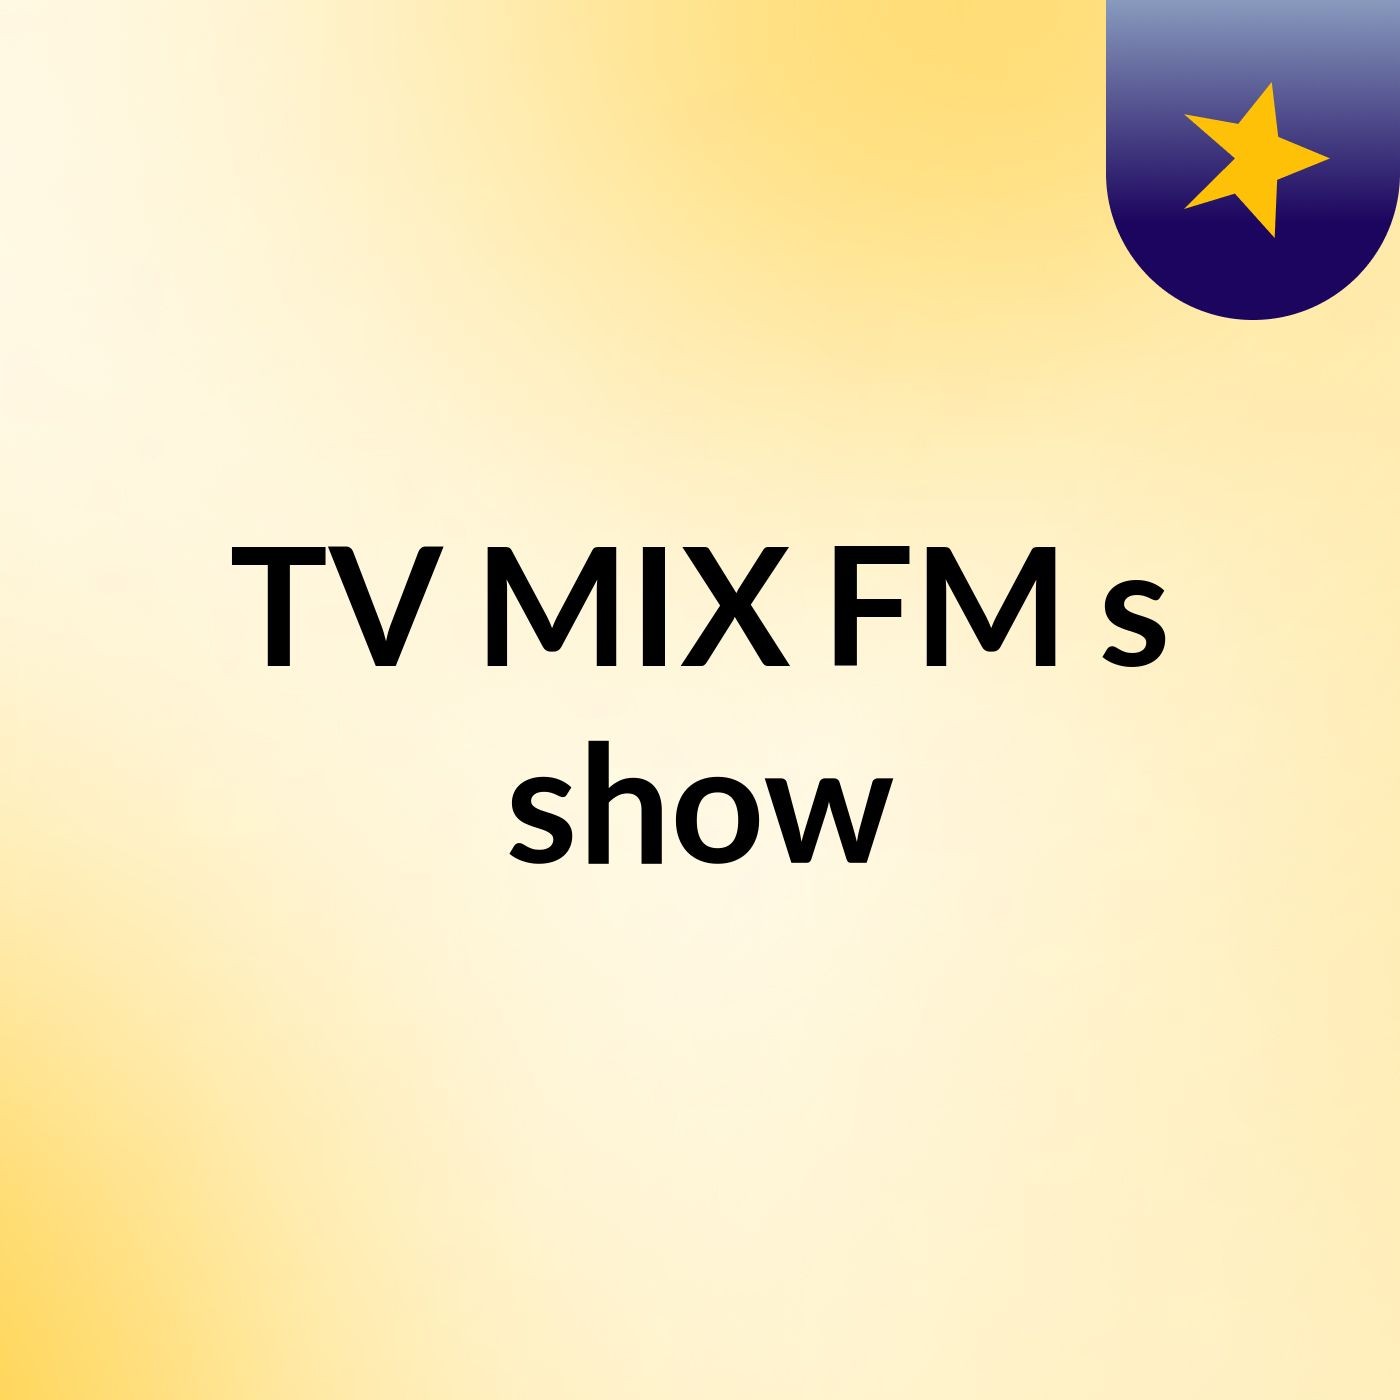 TV MIX FM's show